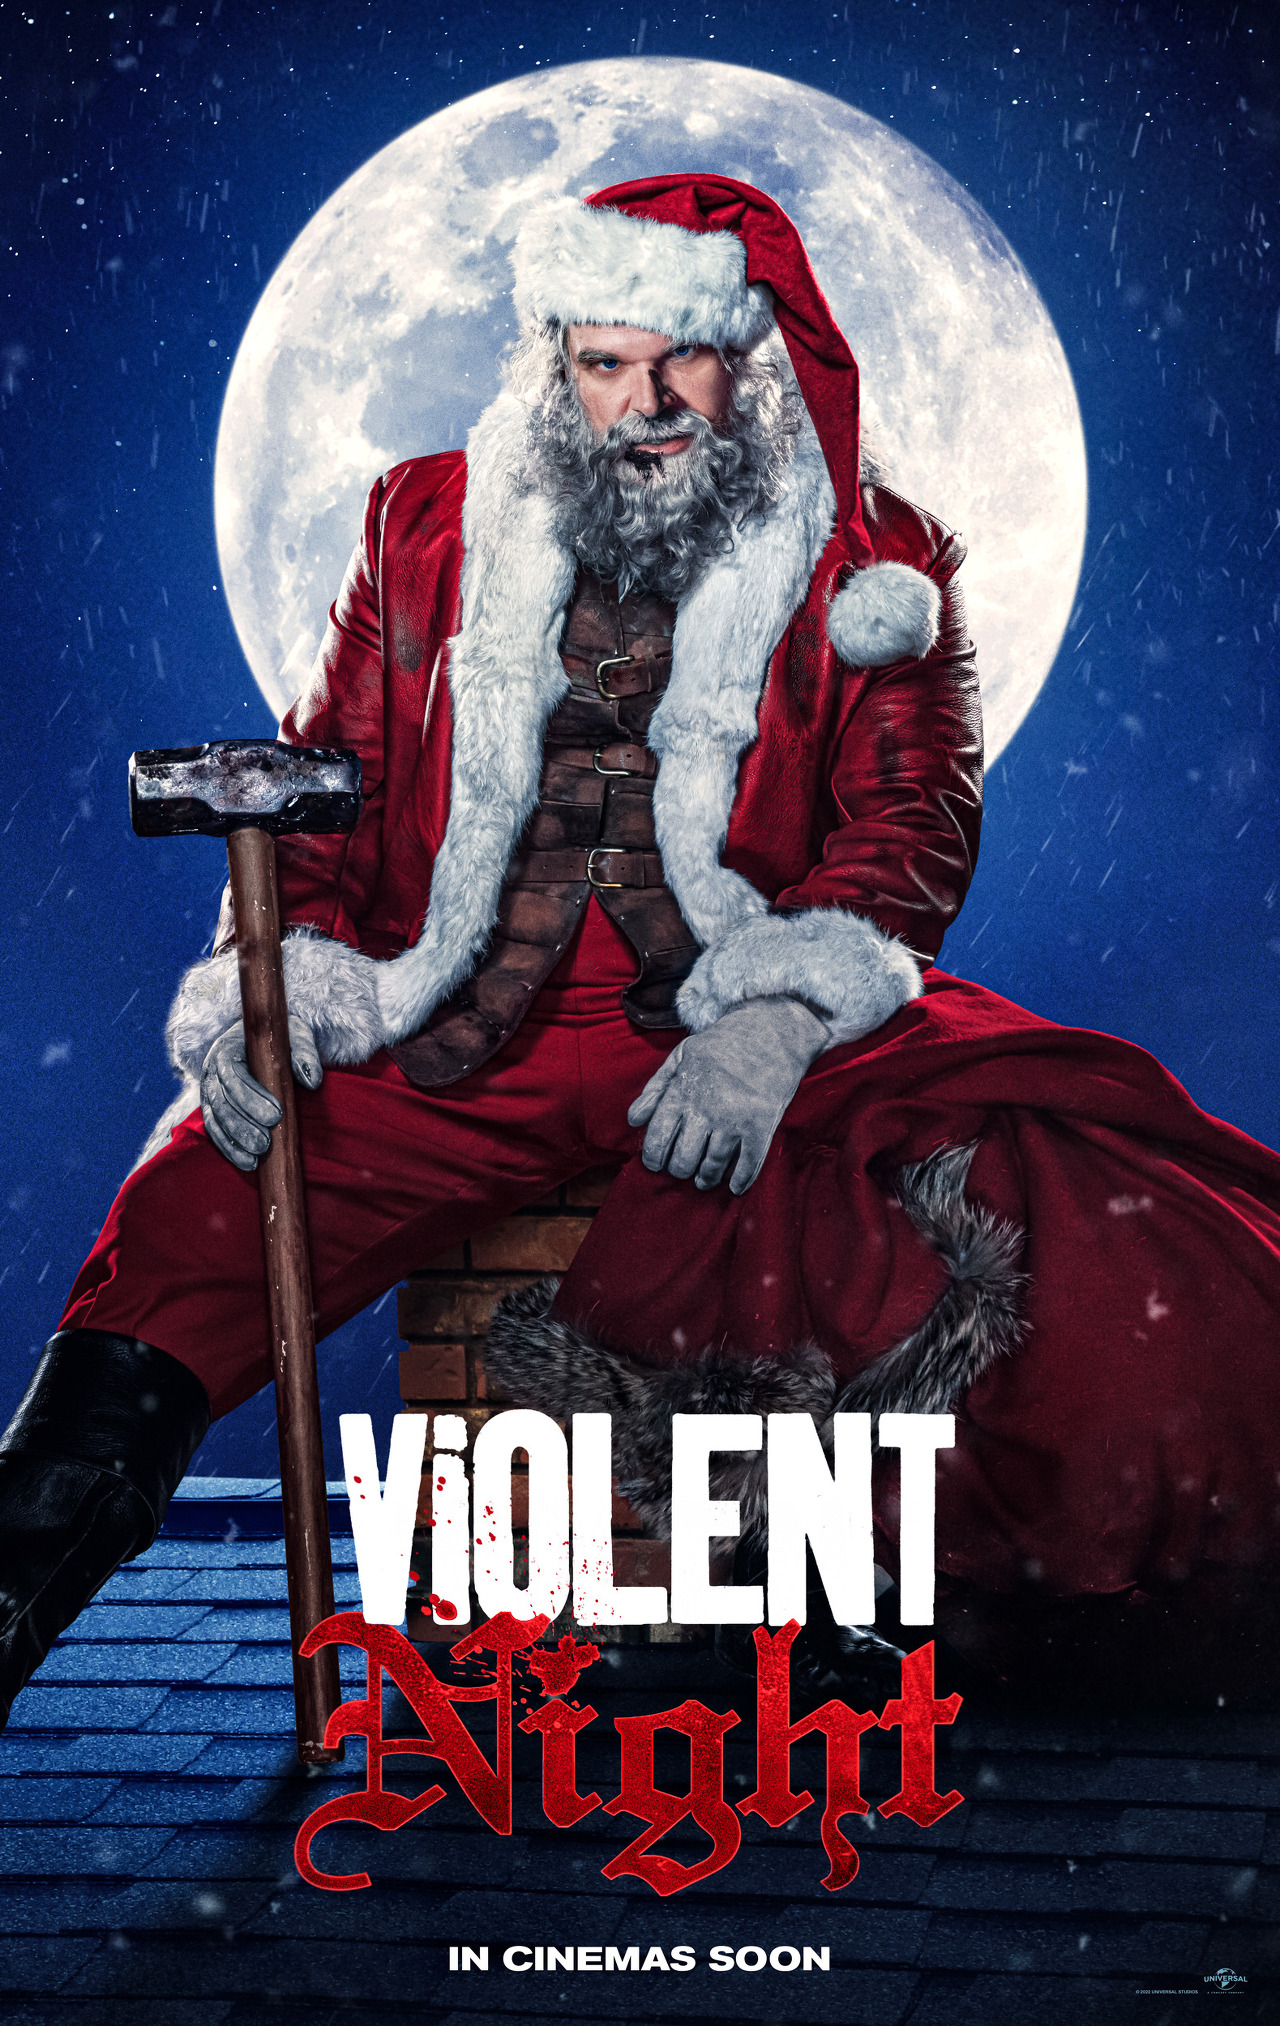 보름달을 배경으로 붉은색 옷을 입은 산타가 지붕에 앉아 있는 모습이다. (영화 &#39;바이올런트 나잇&#39; 포스터)